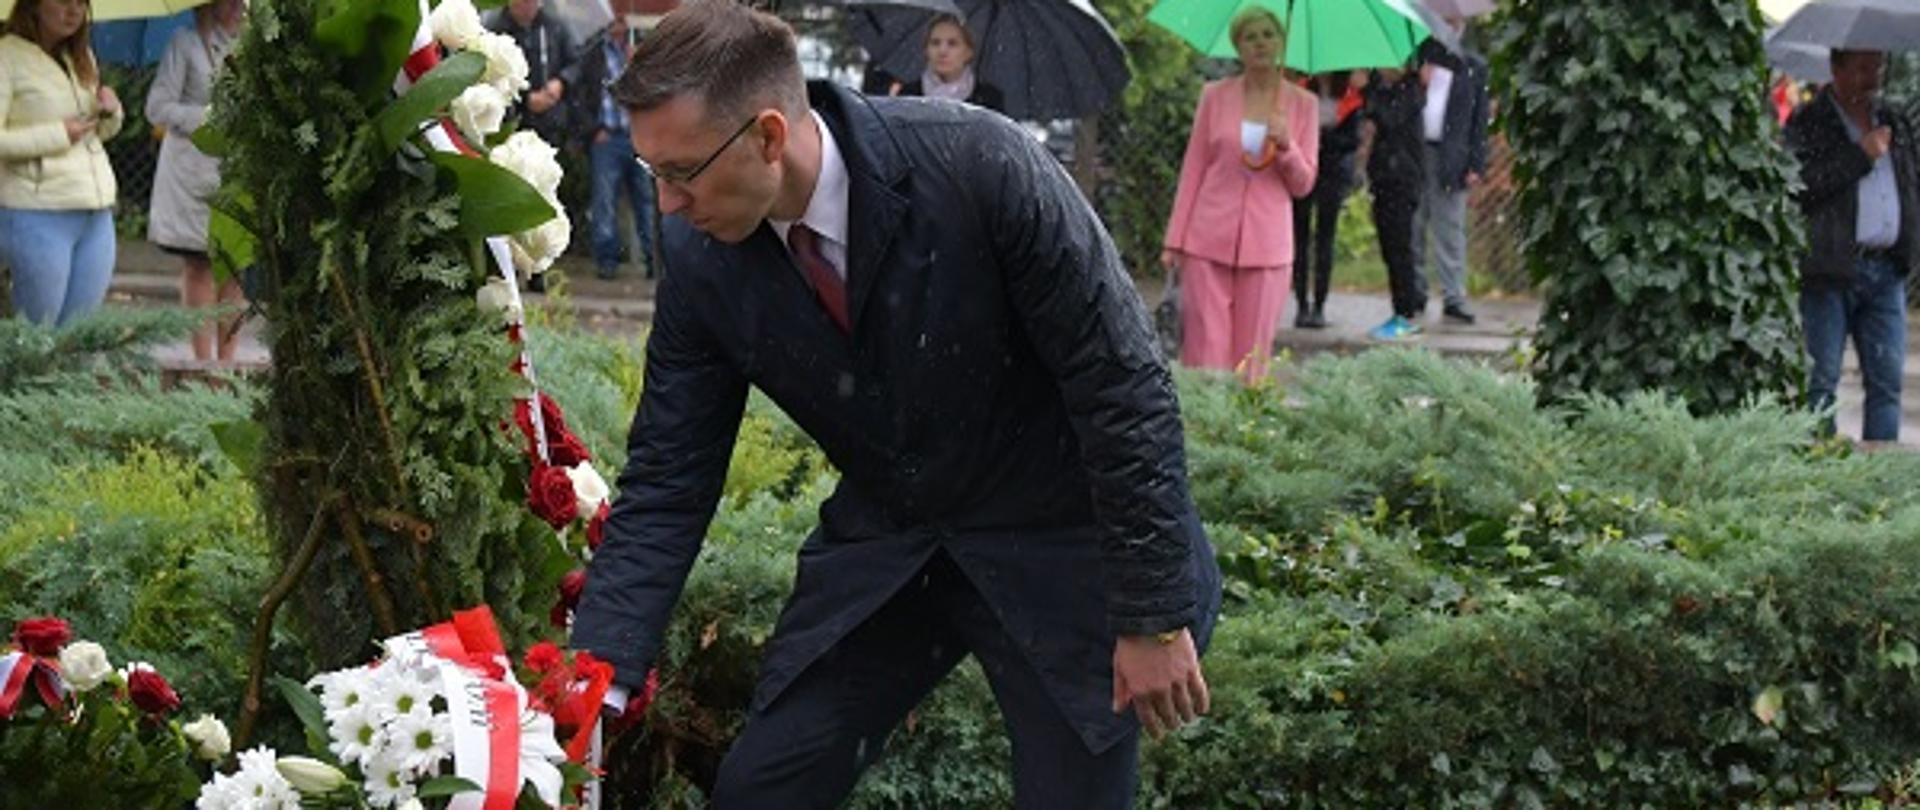 Na zdjęciu, na pierwszym planie elegancko ubranego mężczyznę w okularach, który składa wiązankę białych kwiatów z biało czerwoną wstążką. W tle widać kilka osób z parasolkami.